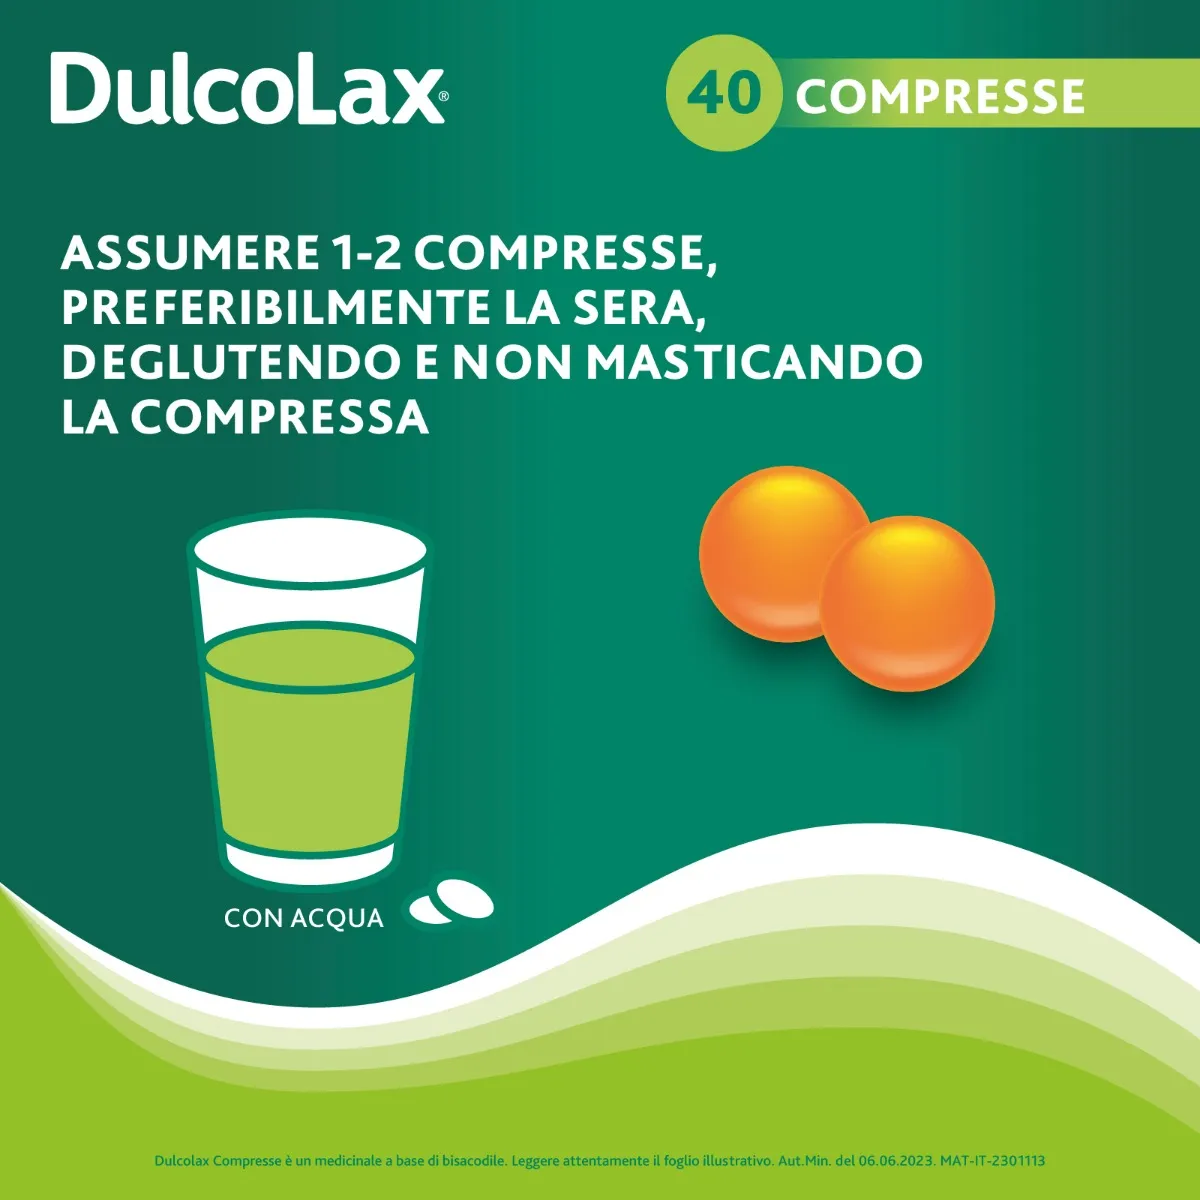 Dulcolax 5 mg 40 Compresse Rivestite Stitichezza Occasionale